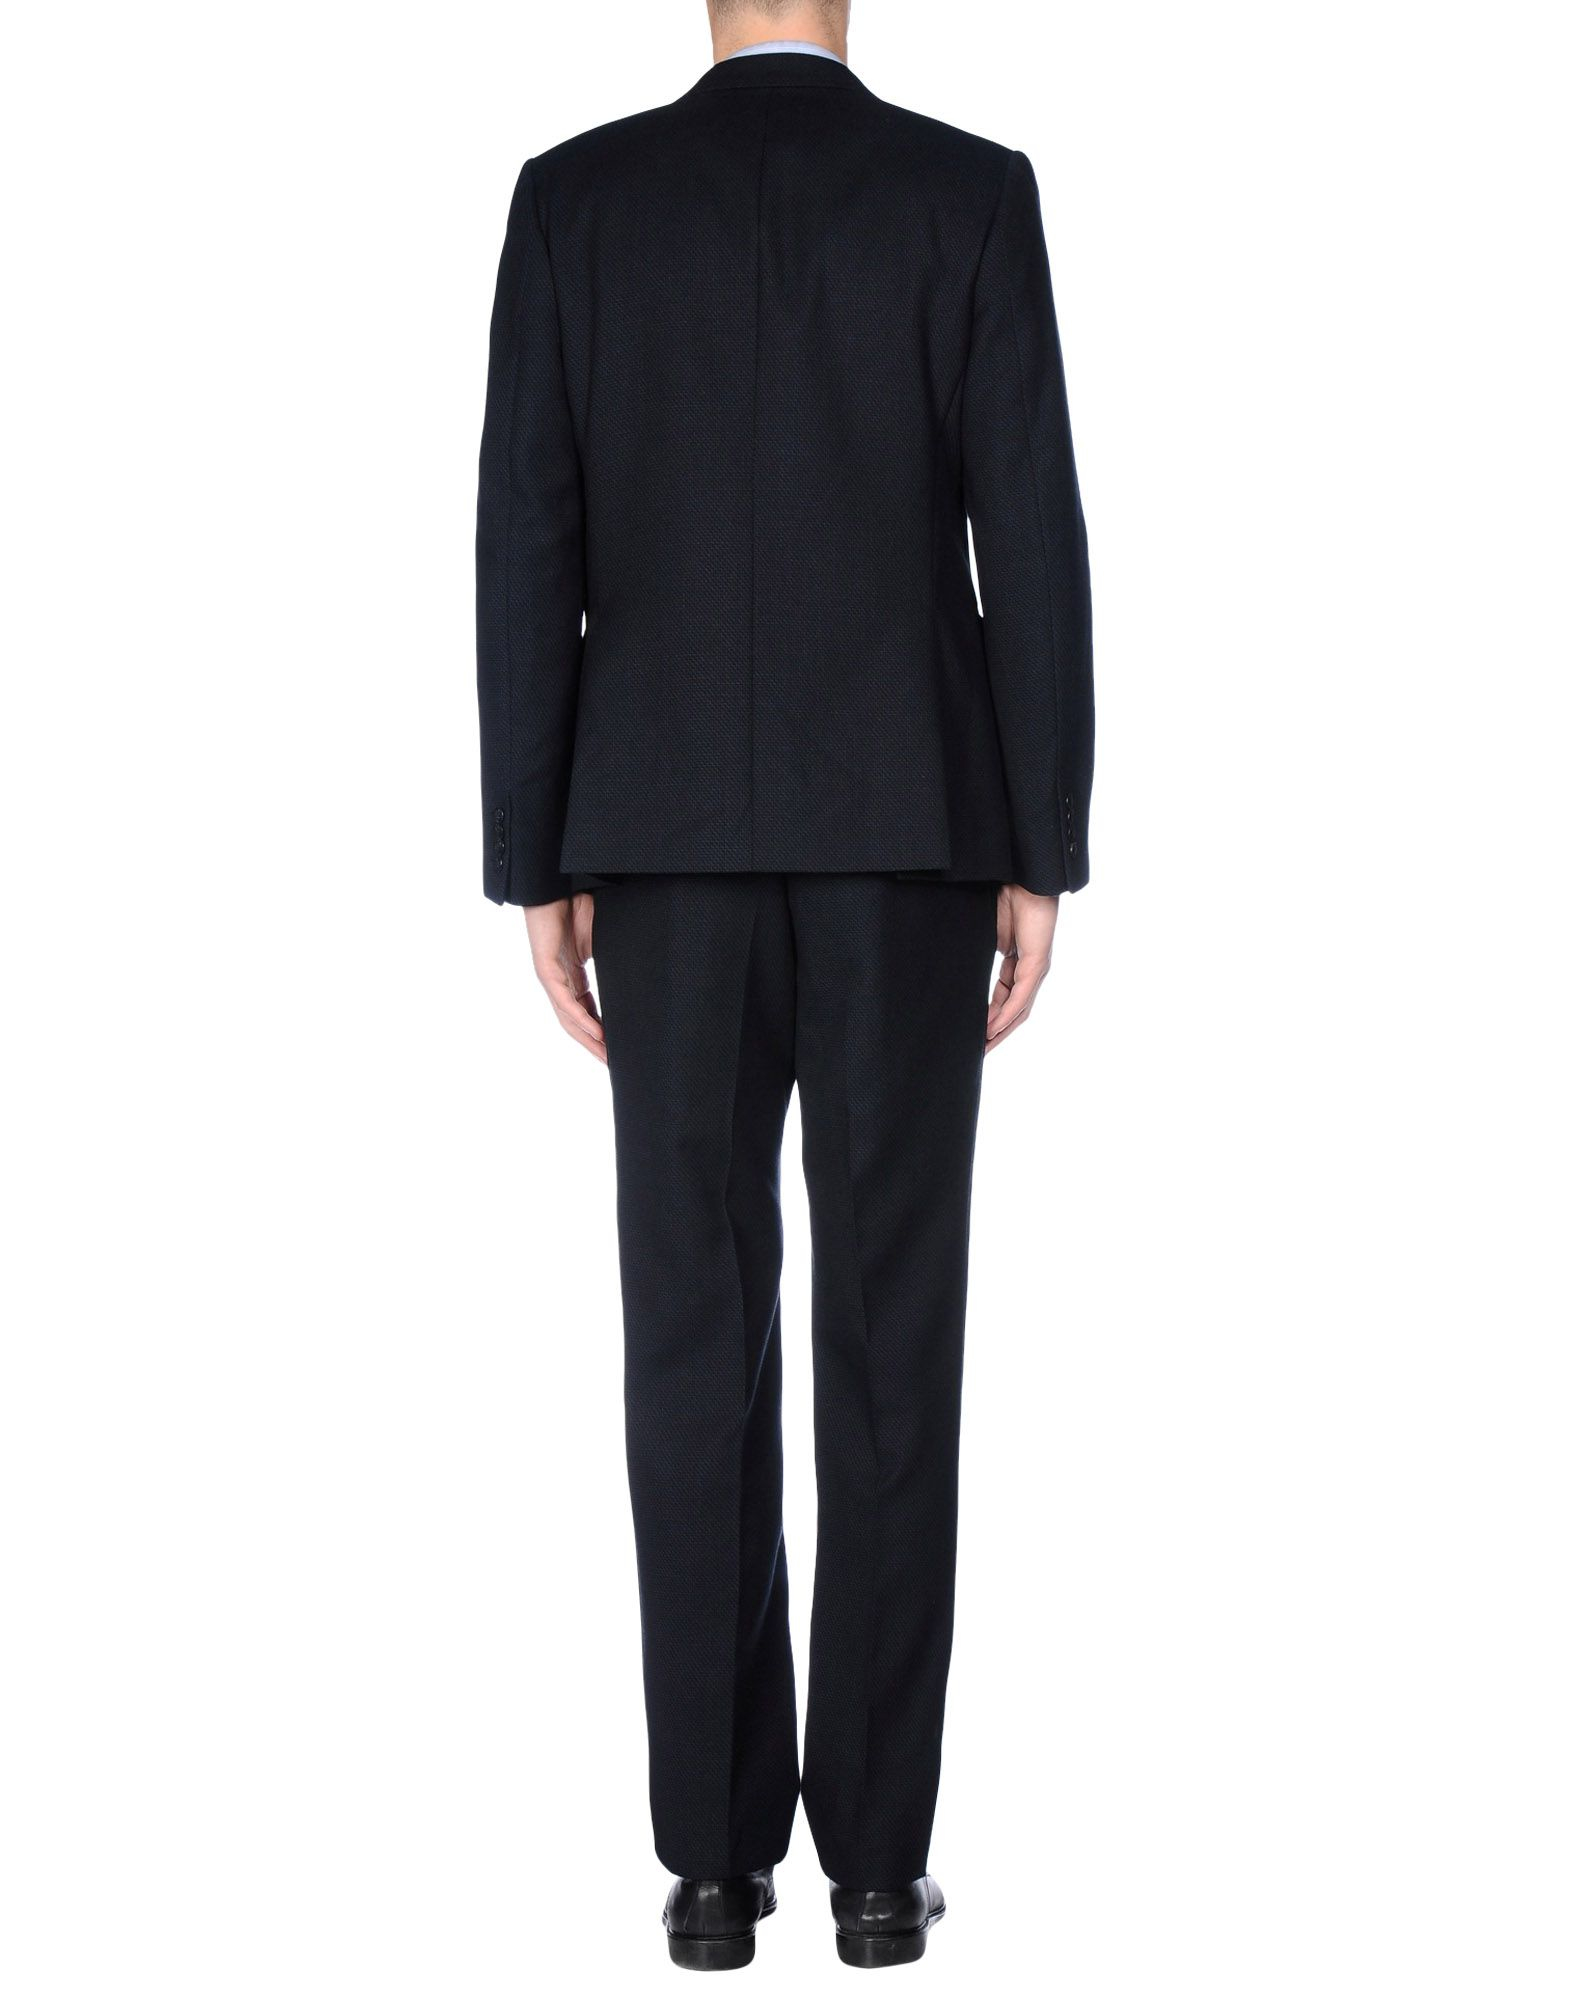 Lyst - Dries Van Noten Suit in Black for Men